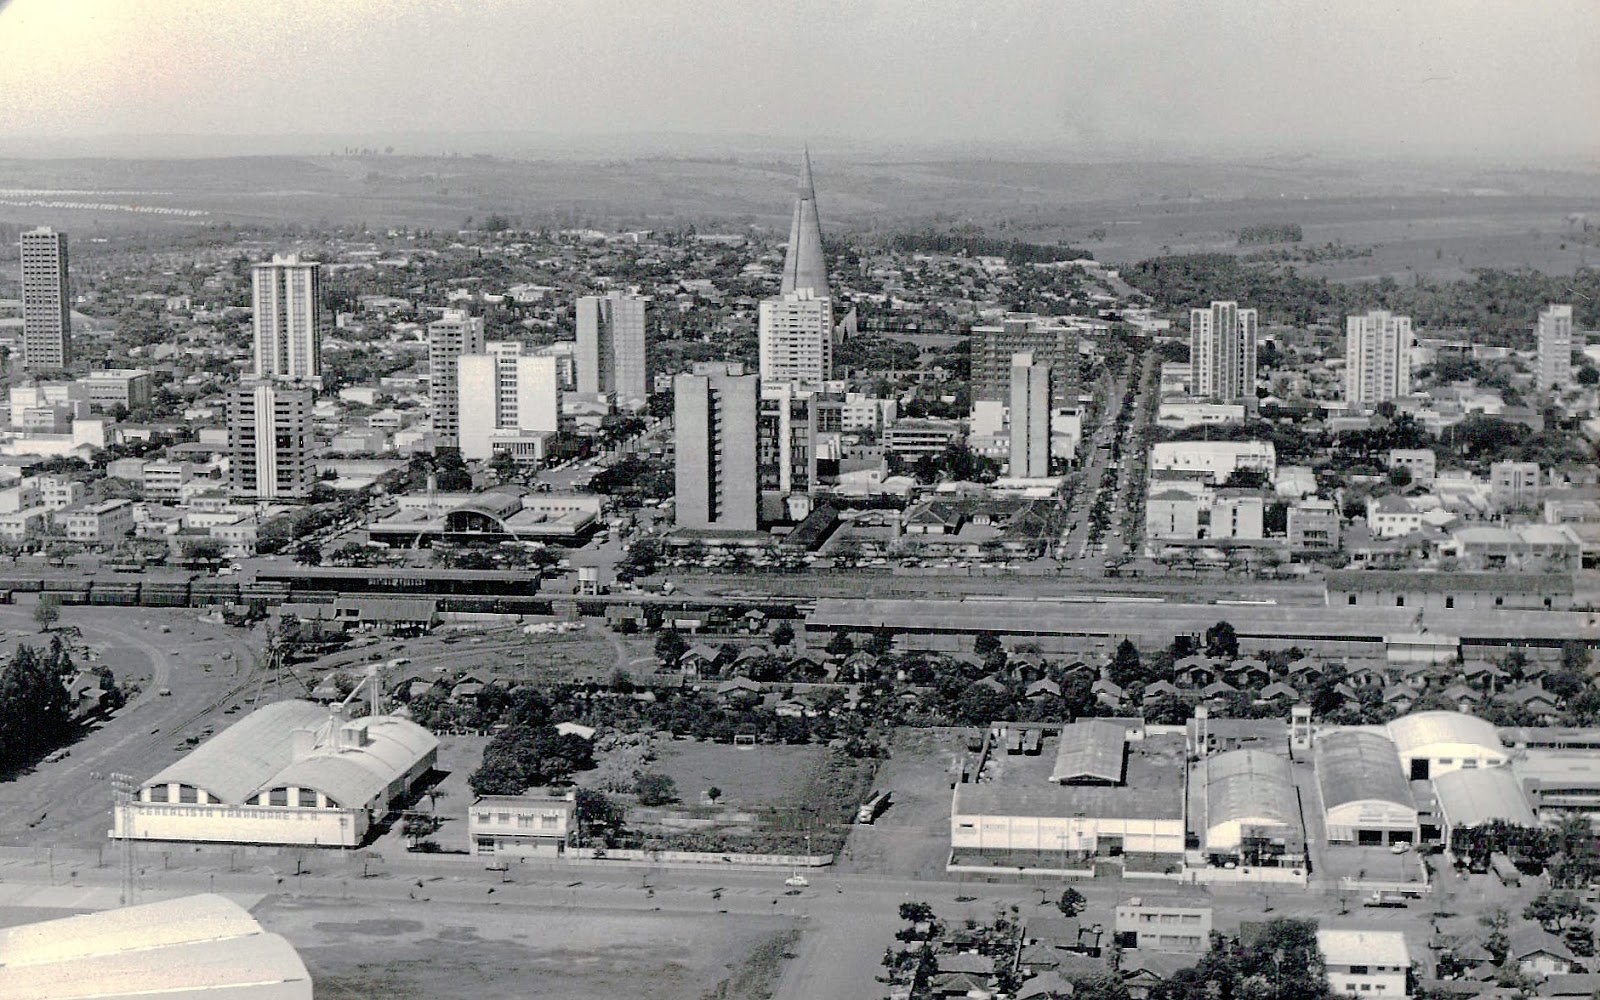 Vista aérea do centro - 1979